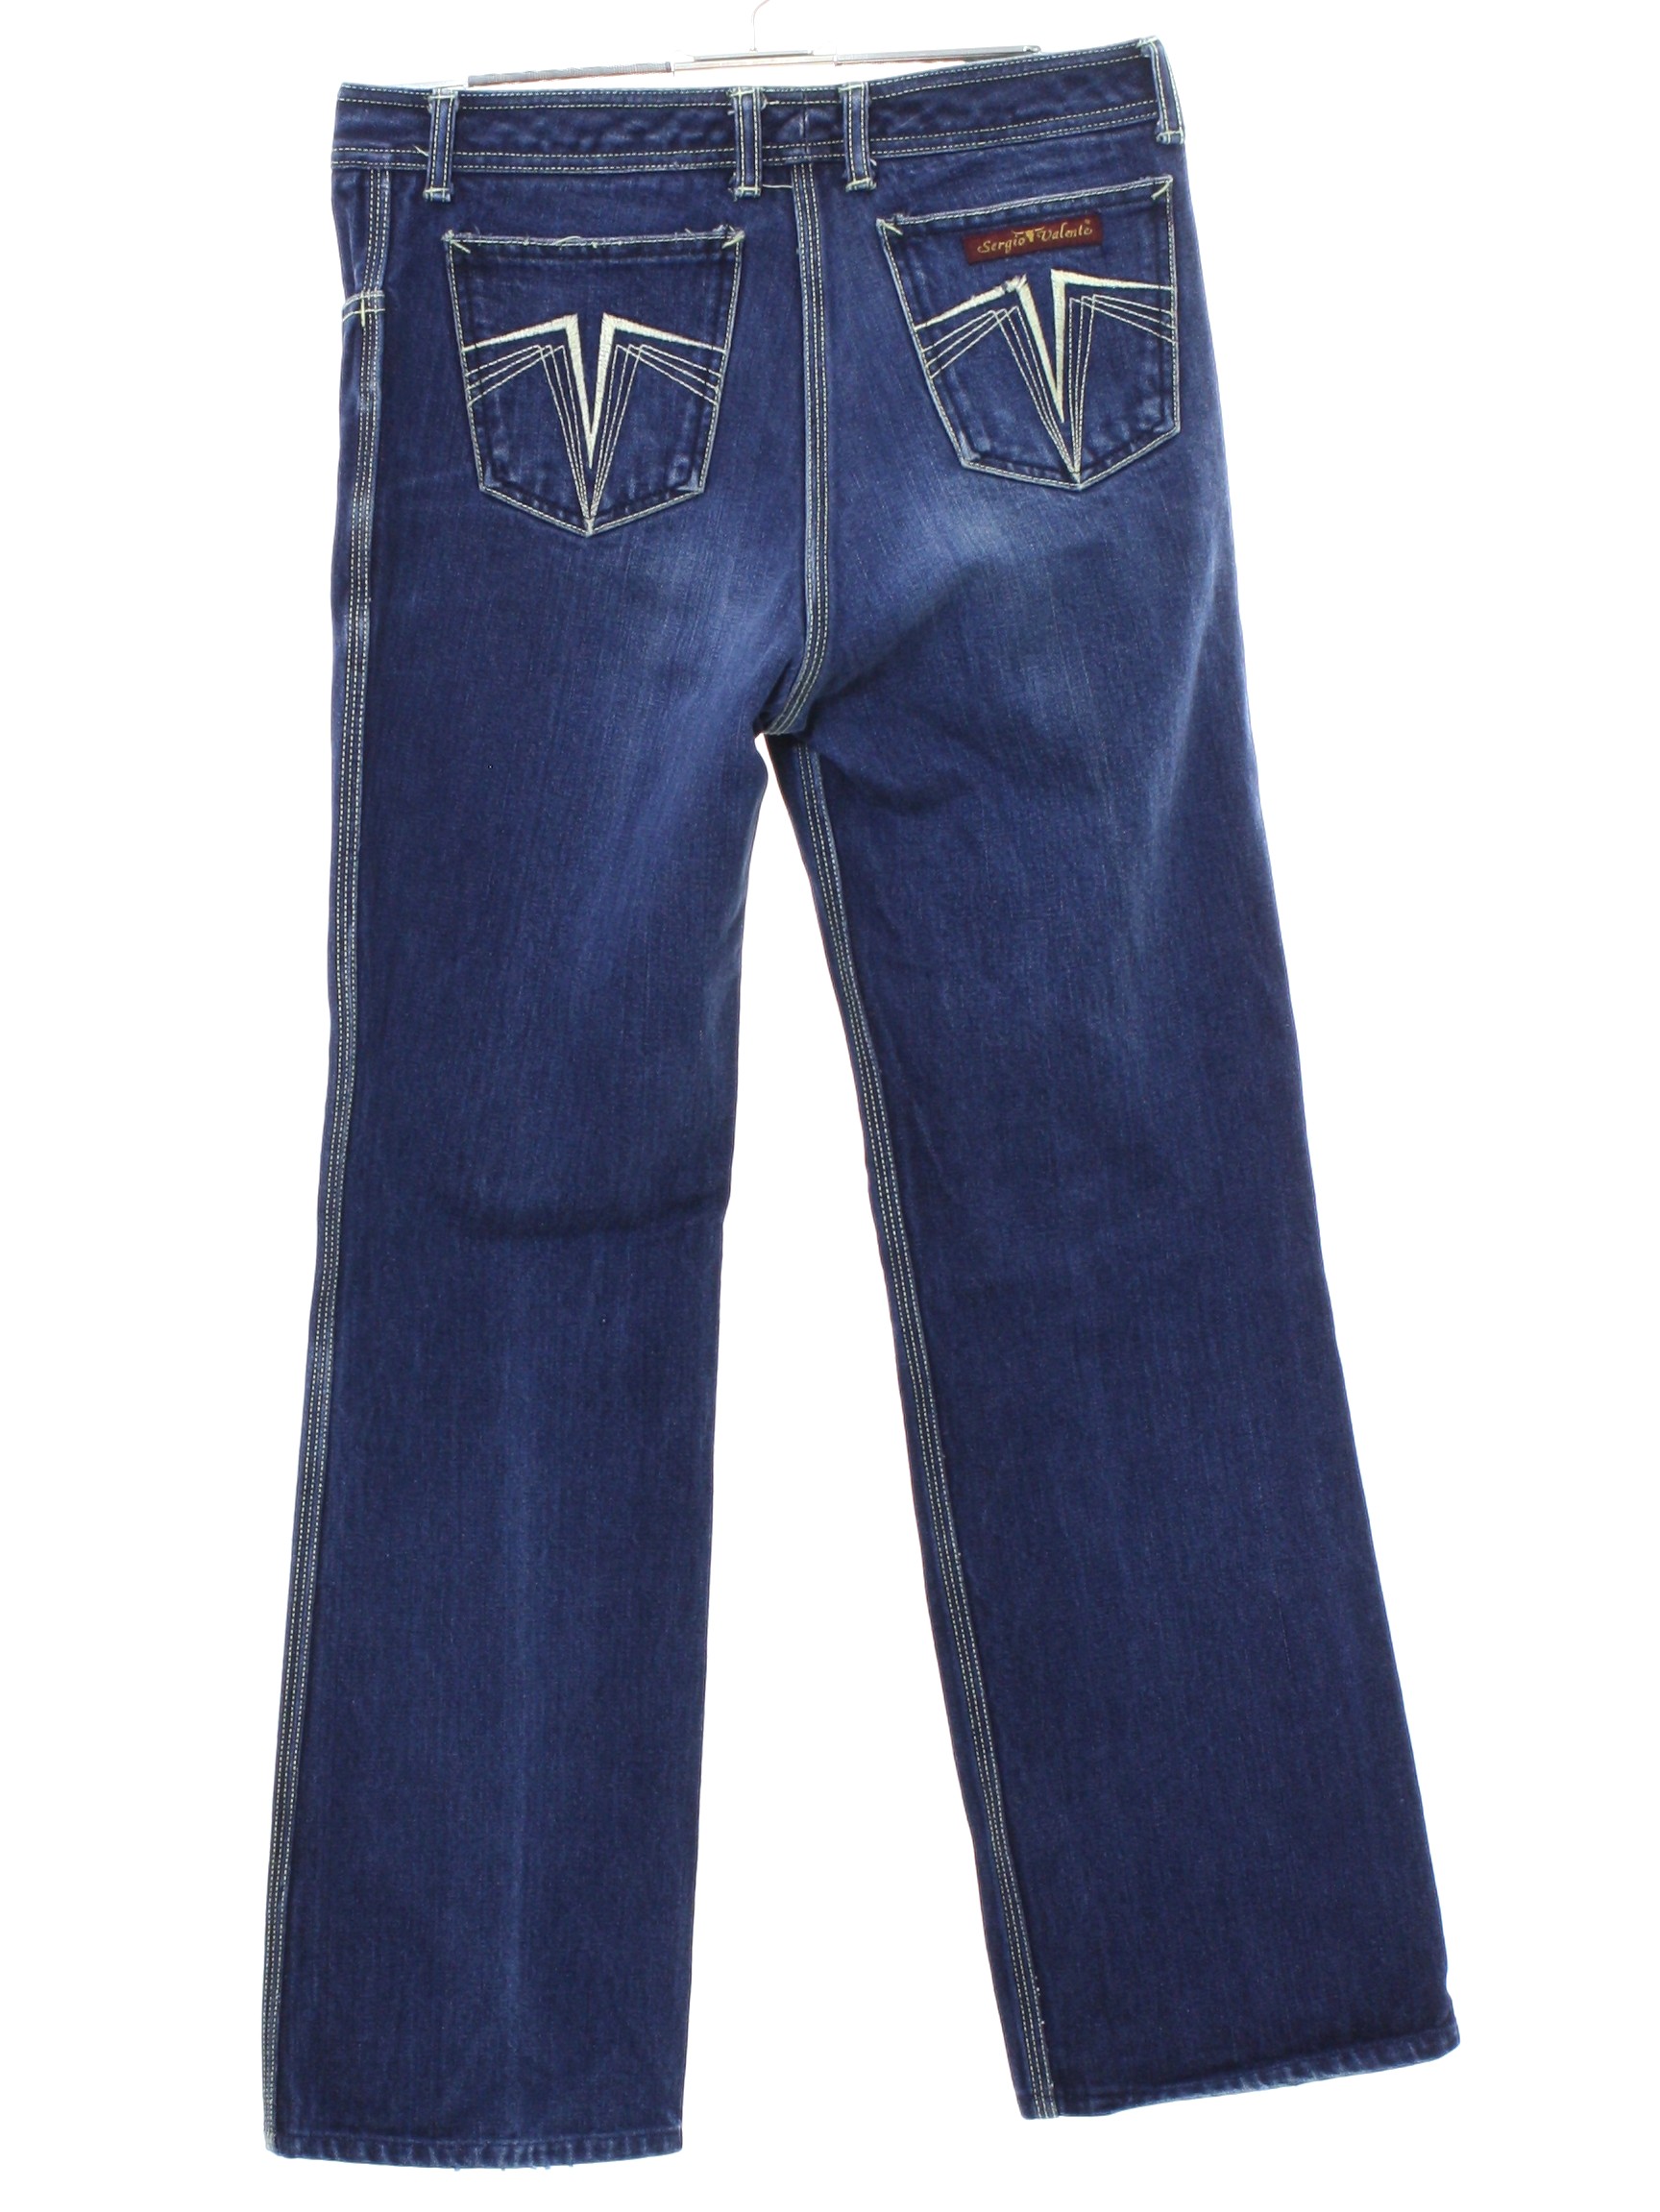 sergio valente jeans for sale